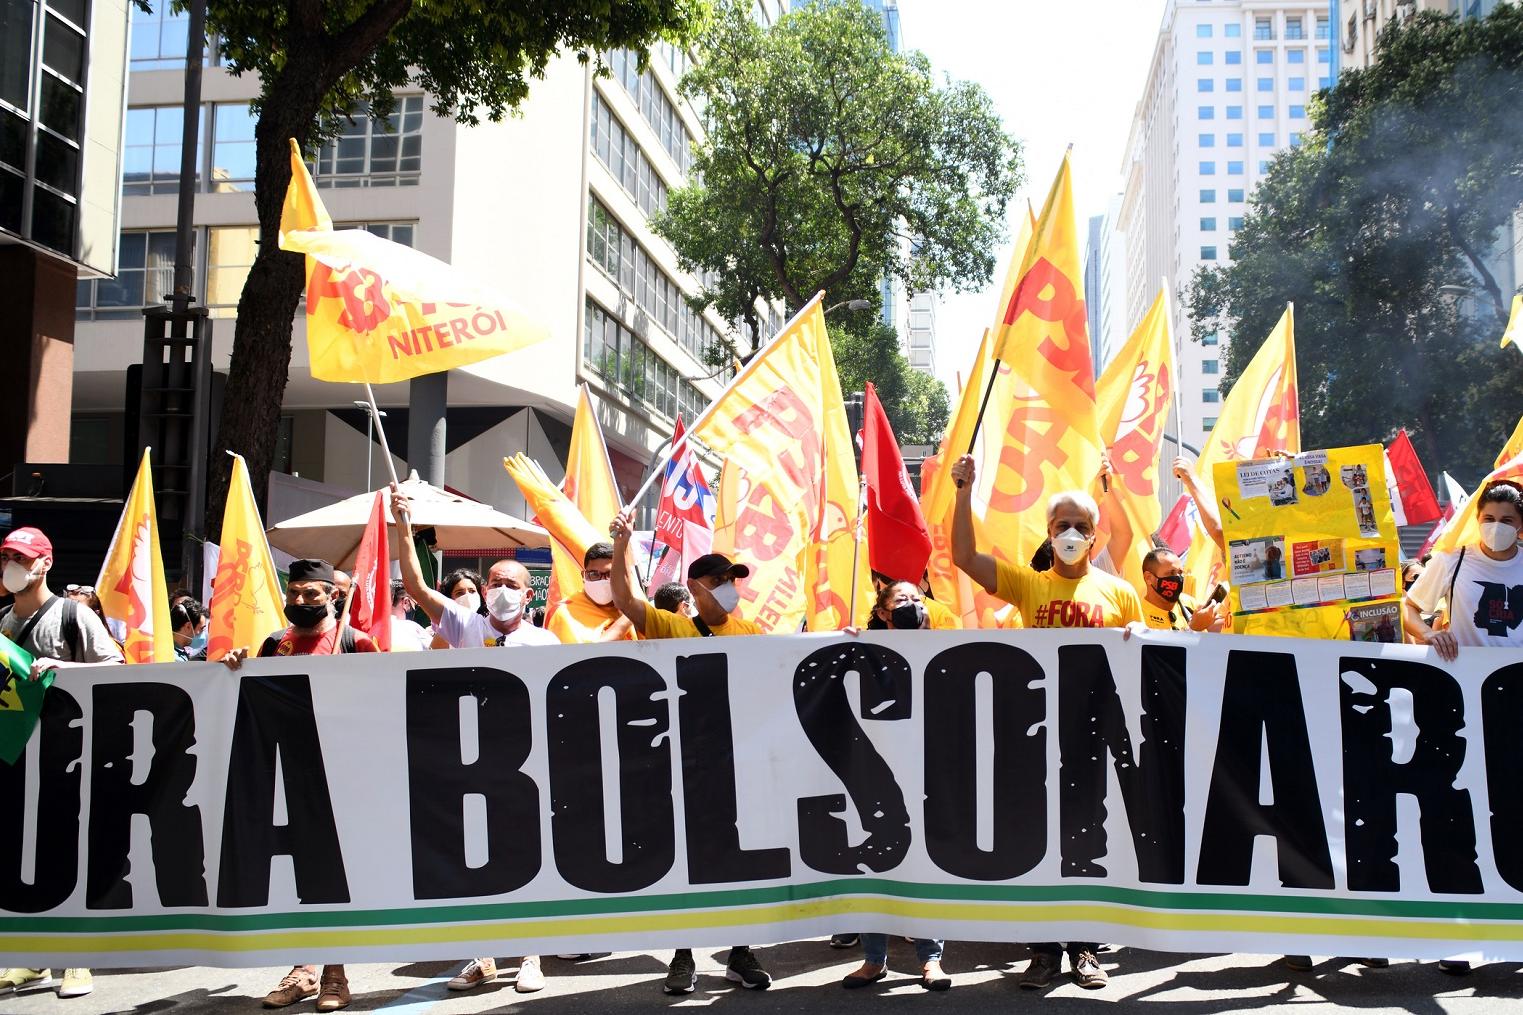 „Bolsonaro raus“ ist auf diesem Transparenz einer Anti-Bolsonaro-Demonstration in Rio de Janeiro am 2. Oktober 2021 zu lesen. Genau ein Jahr später am 2. Oktober 2022 stehen nun Präsidentschaftswahlen in Brasilien an.